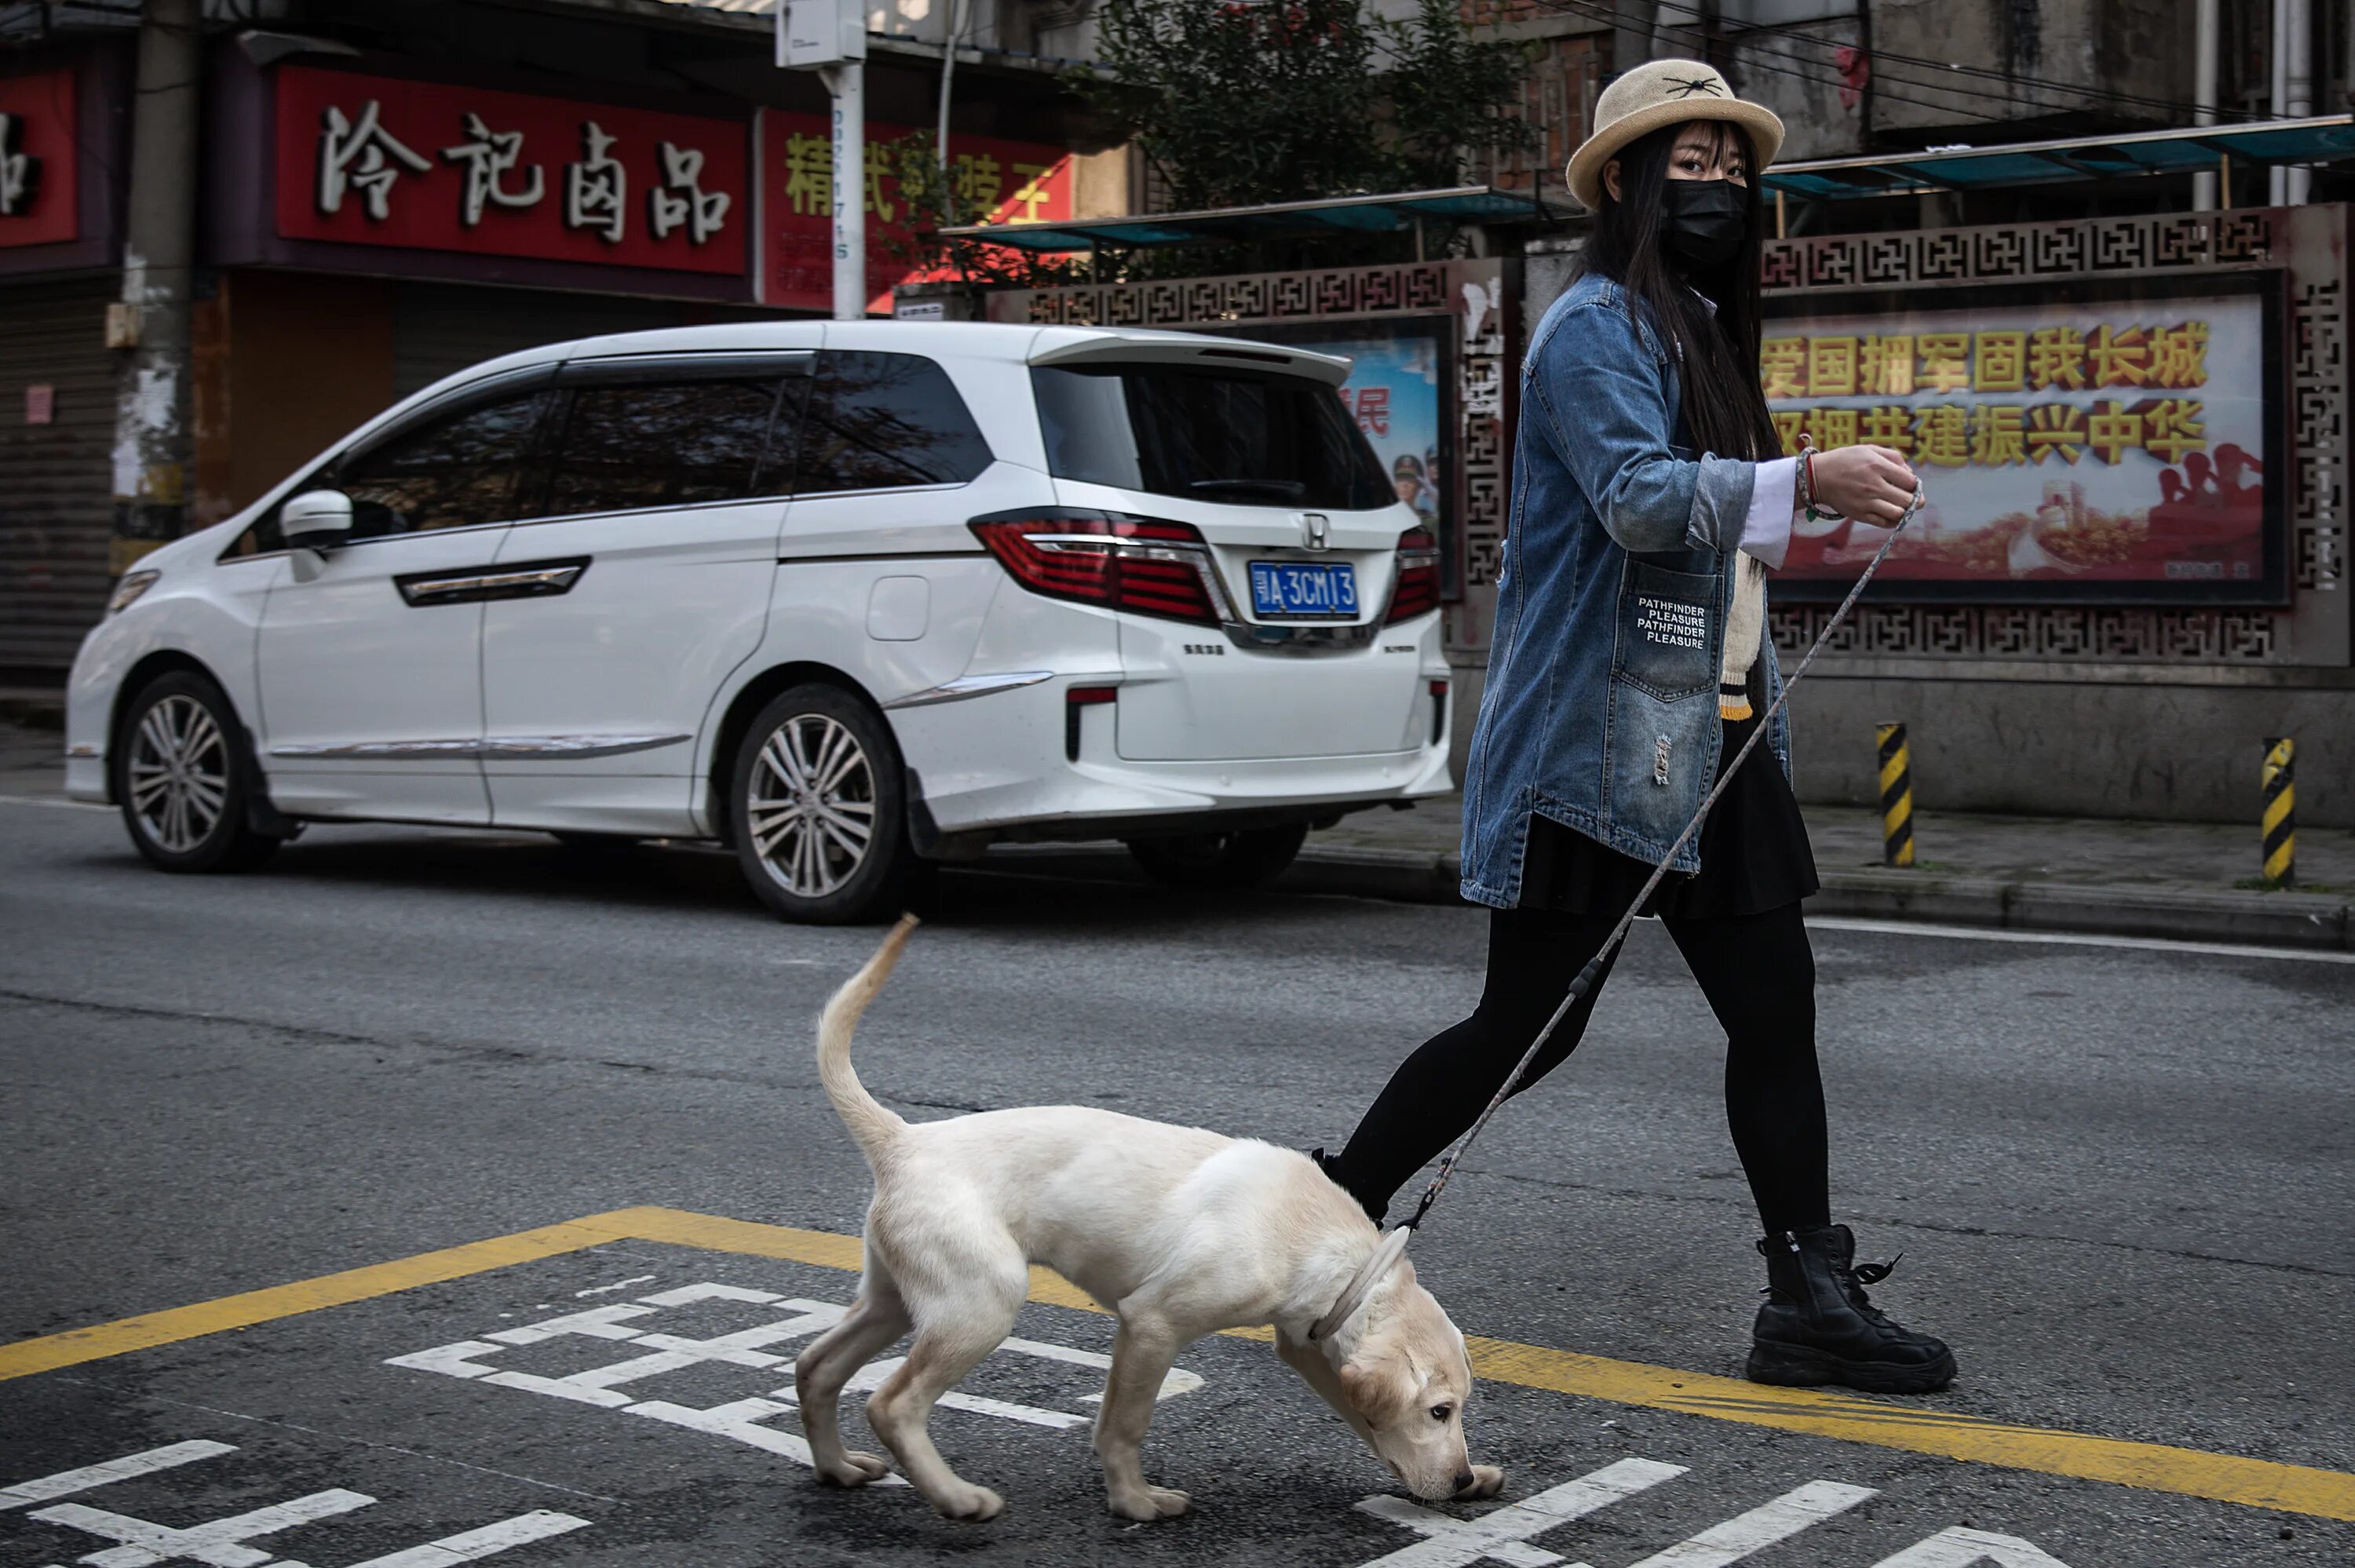 Выгул собак в общественных местах. Популярные собаки в Китае. Крутая собака китаец. Собака в людном месте.